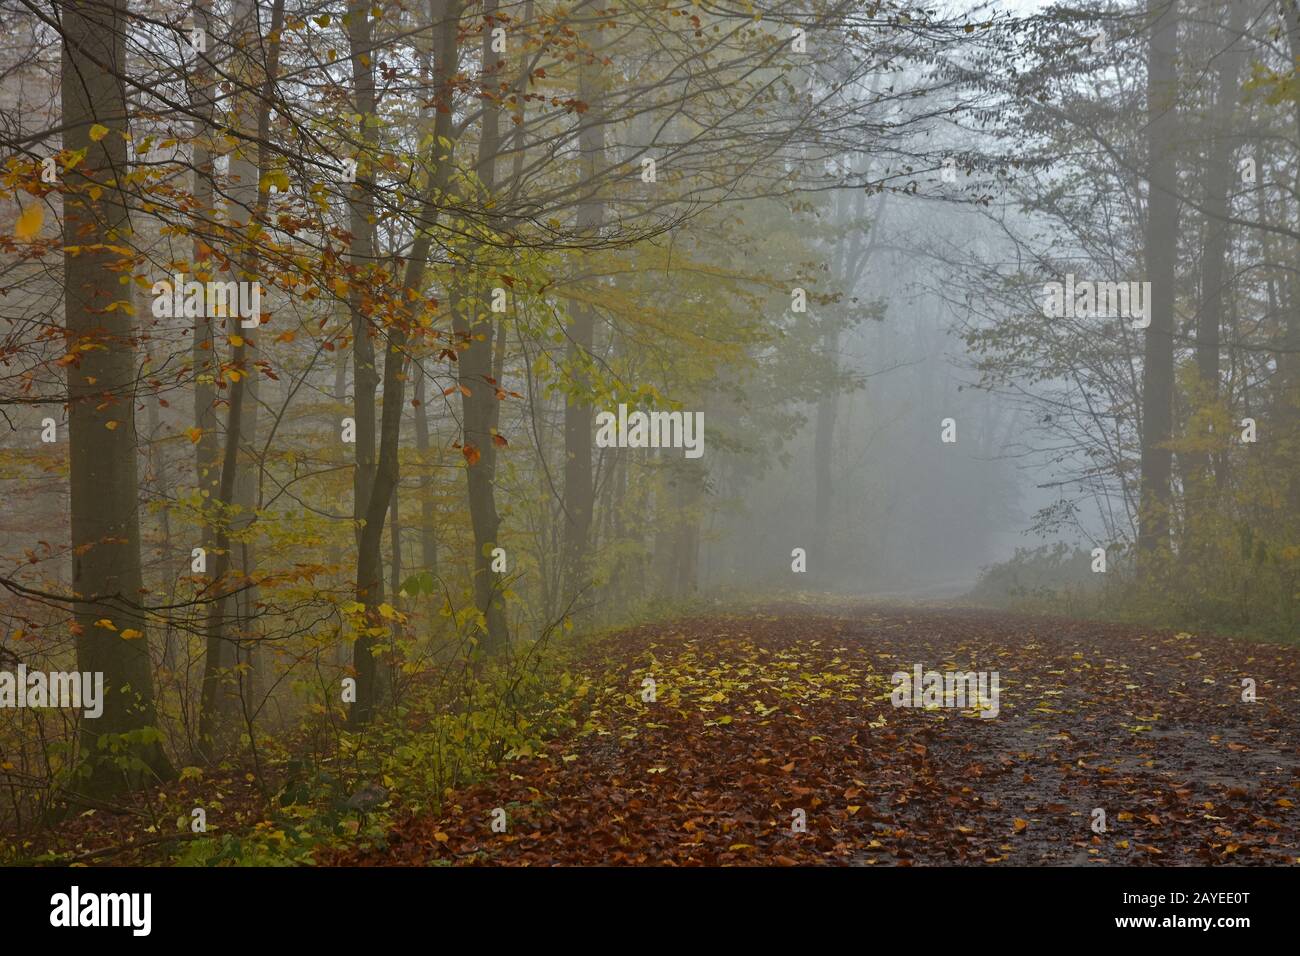 Forêt d'automne avec brouillard de novembre Banque D'Images